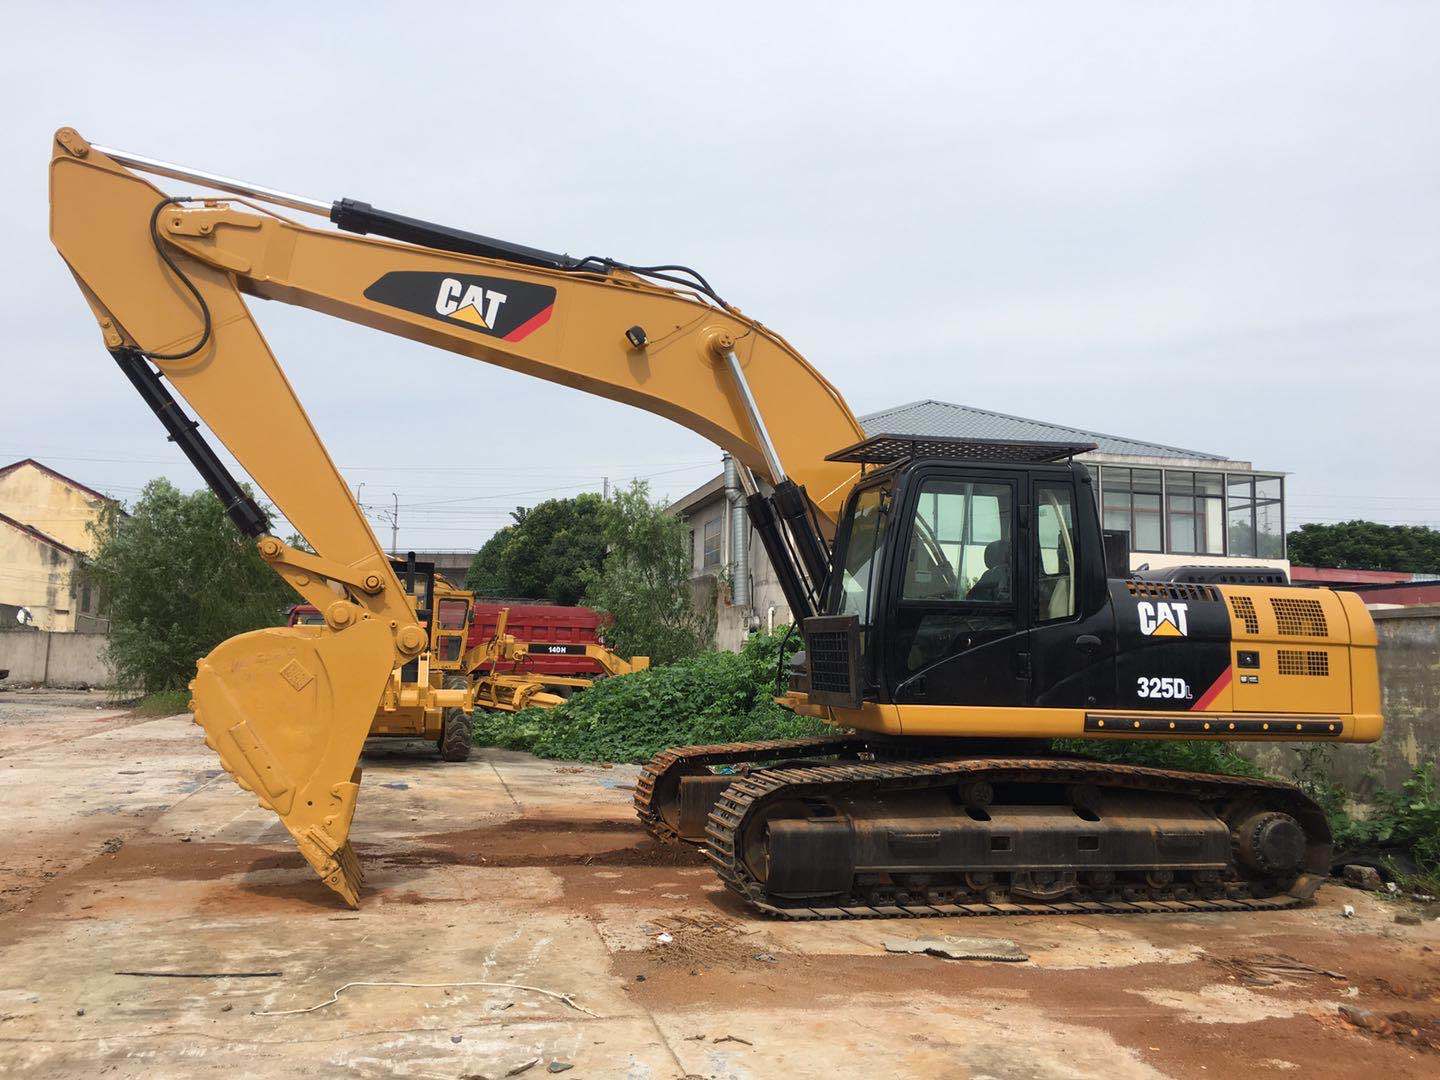 
                Escavatore originale fabbricato in Giappone escavatore usato Cat 325D, usato escavatore Caterpillar 325dl in vendita
            